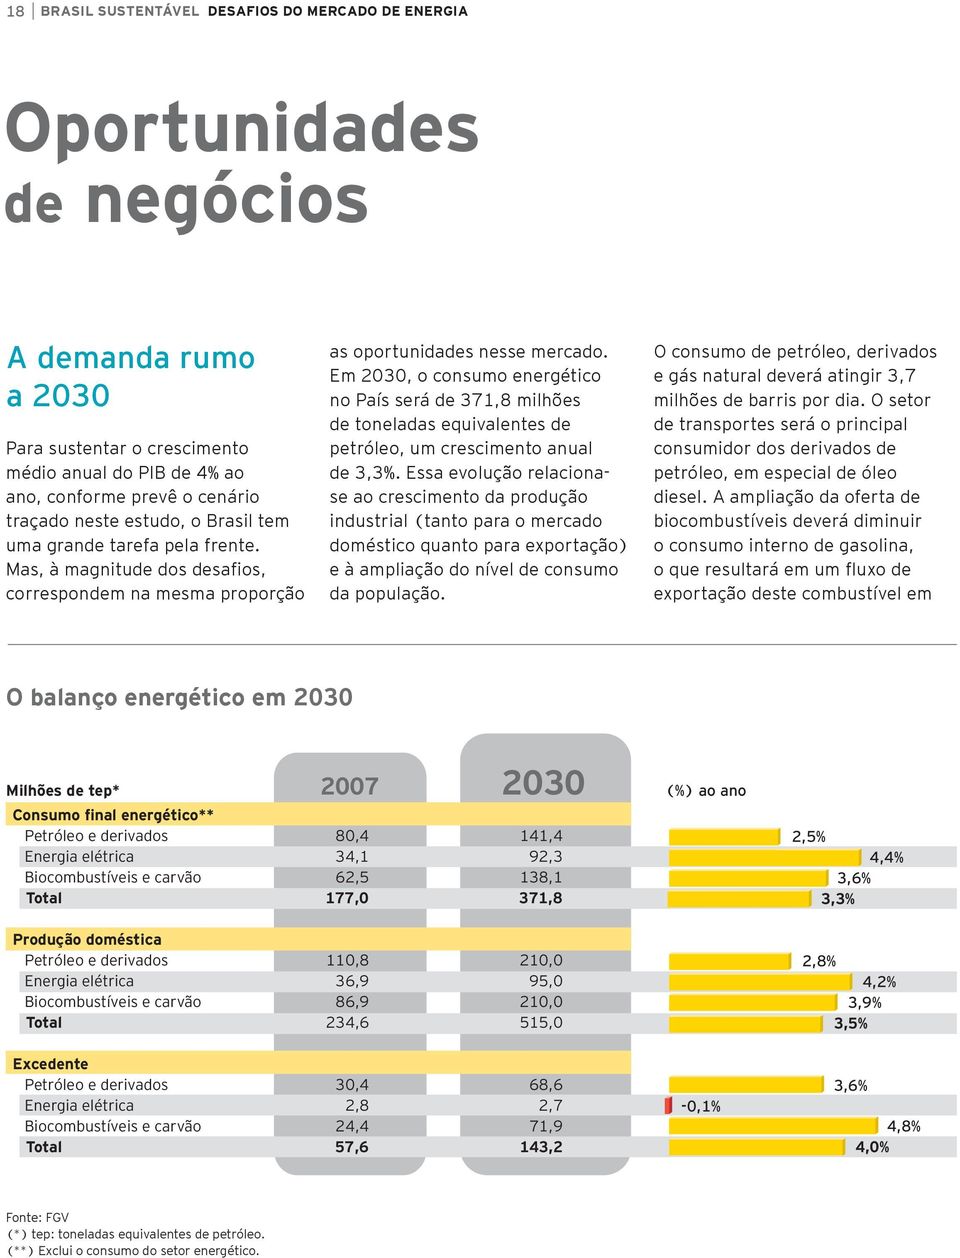 Em 2030, o consumo energético no País será de 371,8 milhões de toneladas equivalentes de petróleo, um crescimento anual de 3,3%.